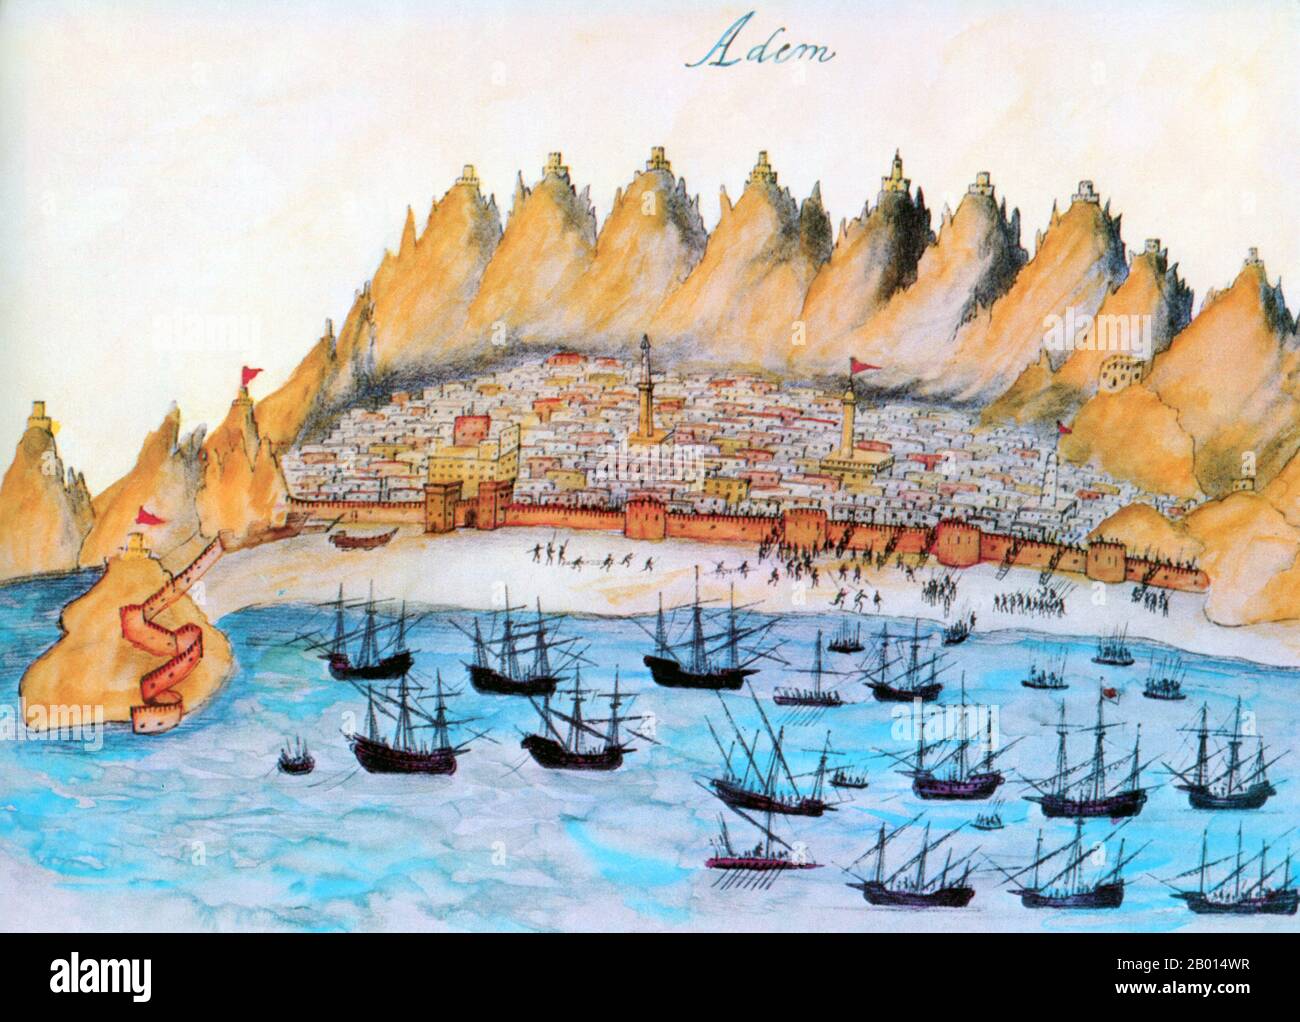 Yemen/Portogallo: Le forze navali di Albuquerque attaccano il porto arabo di Aden nel febbraio 1513. Illustrazione in legno colorato di 'Lendas da India' (Leggende dell'India) di Gaspa Correia (c.. 1496-1563), 16 ° secolo. Afonso de Albuquerque (1453-1515) fu un ammiraglio portoghese le cui realizzazioni militari e amministrative come secondo governatore dell'India portoghese stabilirono l'impero coloniale portoghese nell'Oceano Indiano. È generalmente considerato un genio militare. Foto Stock